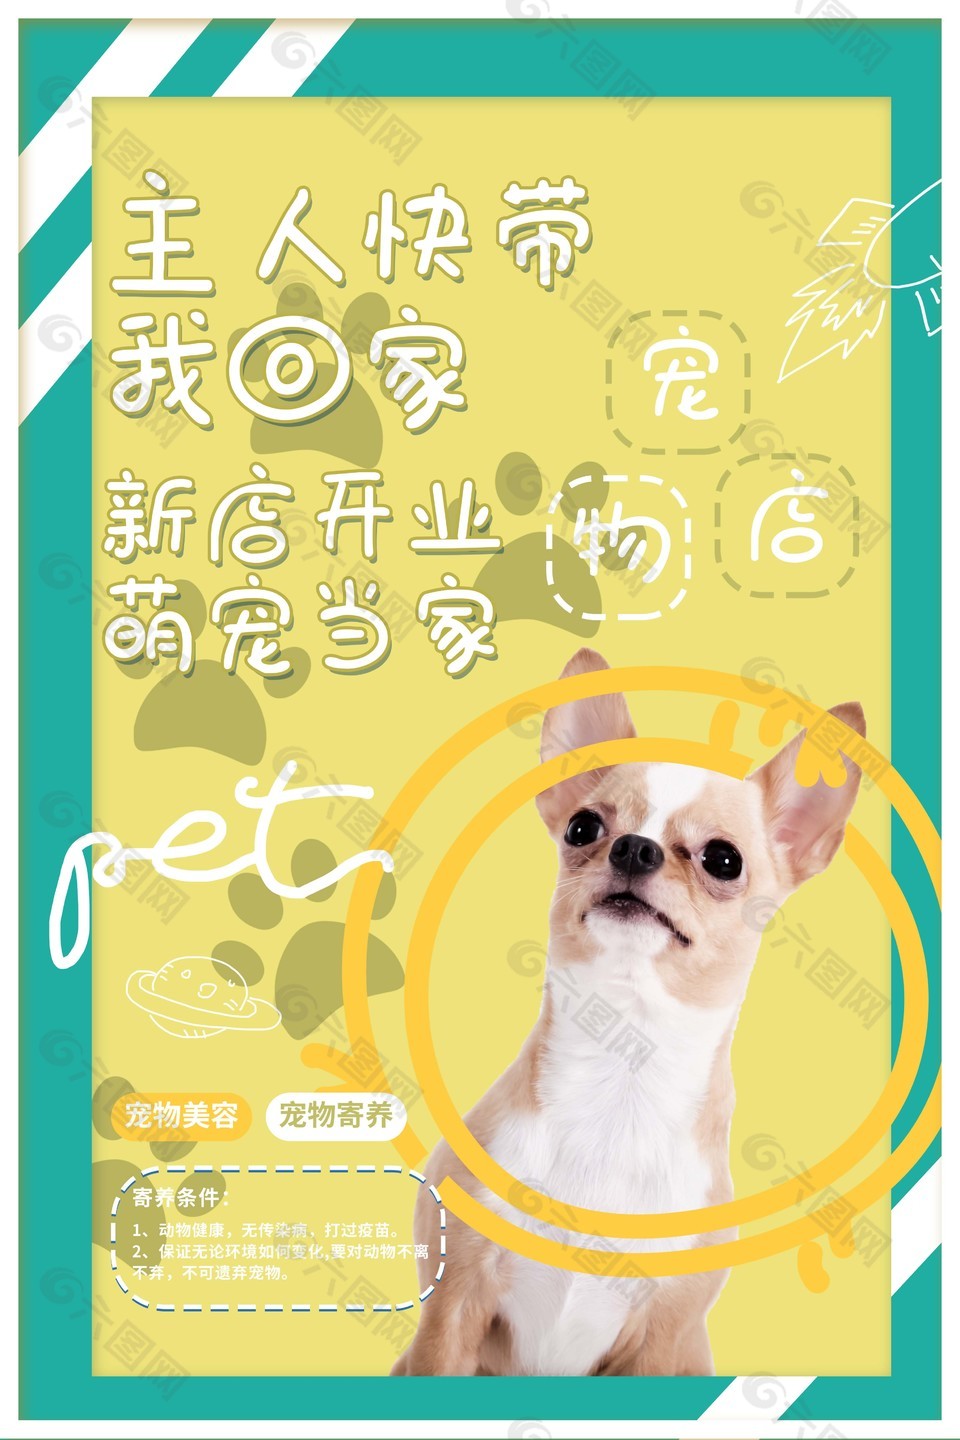 简约宠物店开业宣传海报图片下载